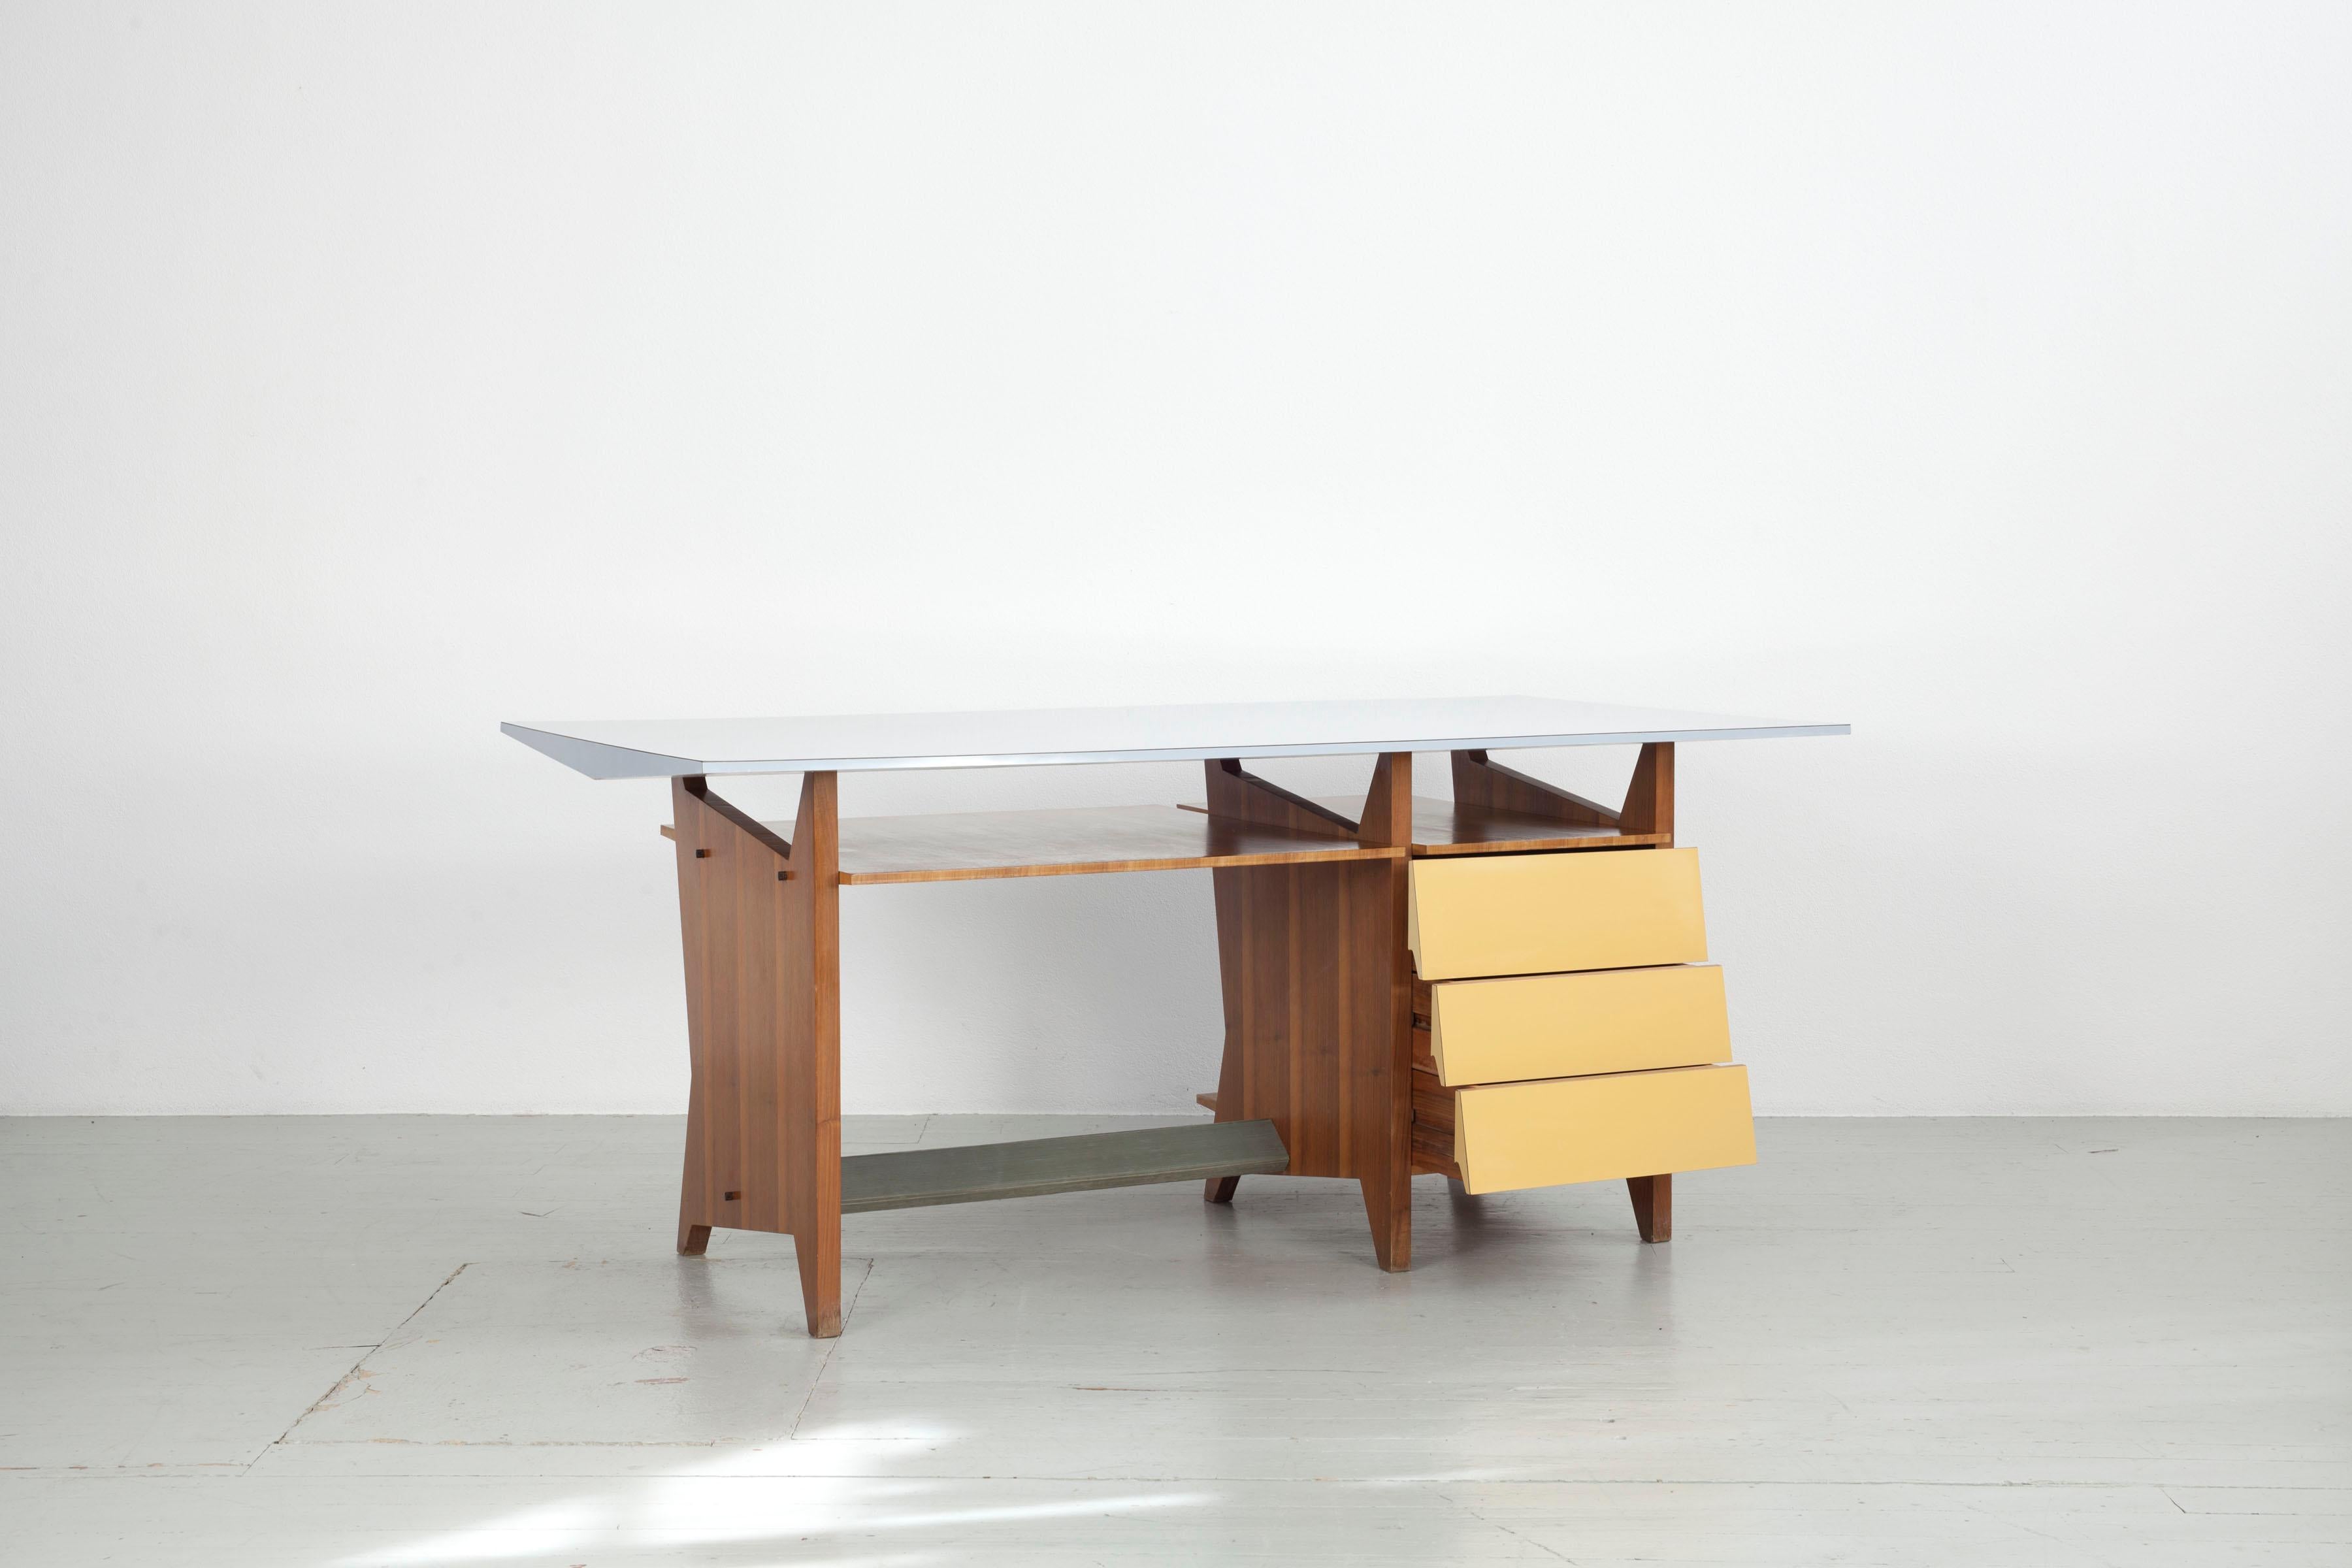 Seltener modernistischer Schreibtisch mit Mahagoni-Furnier und hellblauer Formica-Tischplatte. Die drei Schubladen sind ebenfalls mit Formica beschichtet. Italienische Herstellung aus den 1960er Jahren. Es sieht am besten aus, wenn es frei im Raum